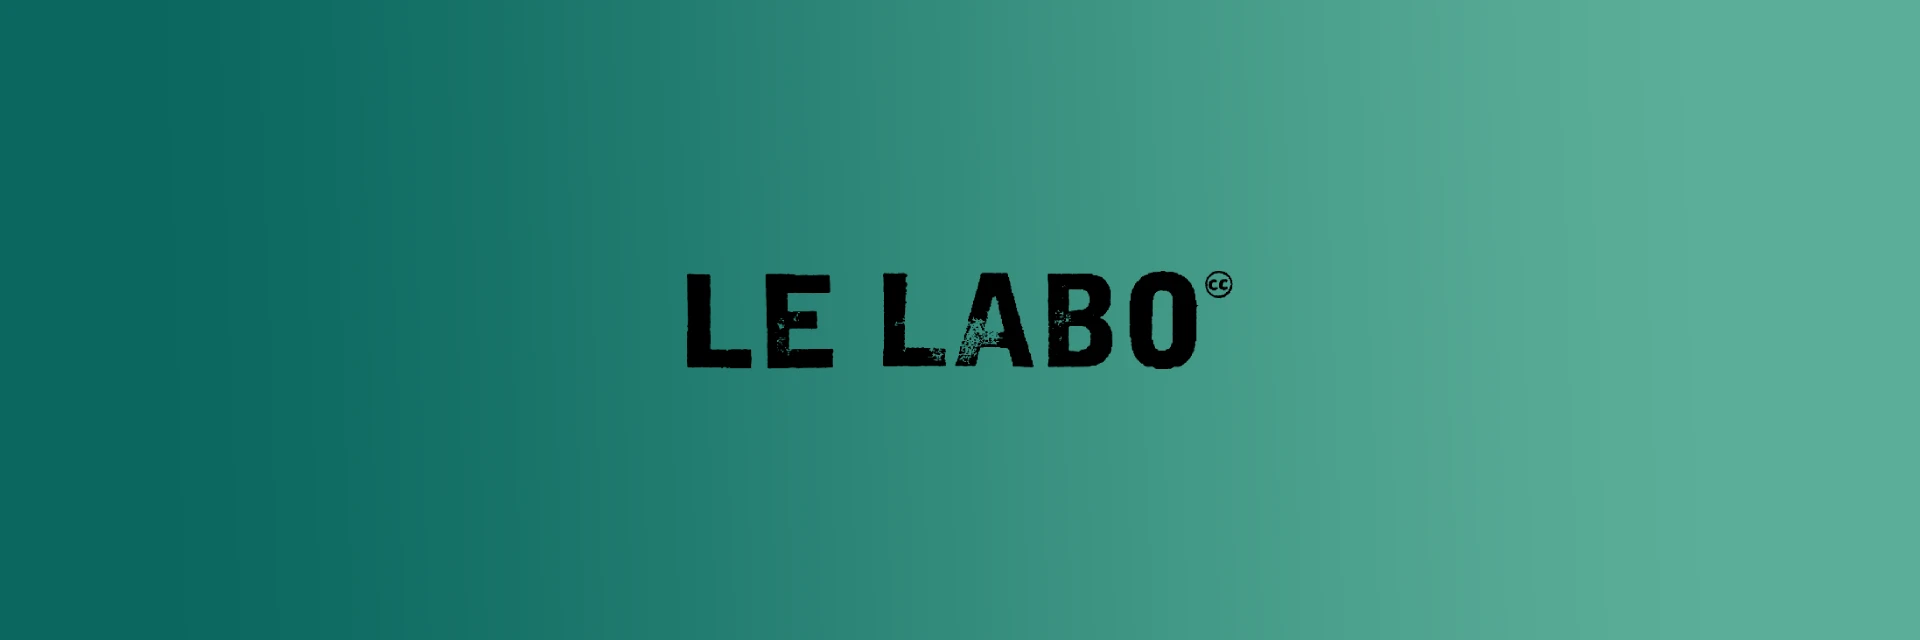 Image of Le Labo perfume brand logo